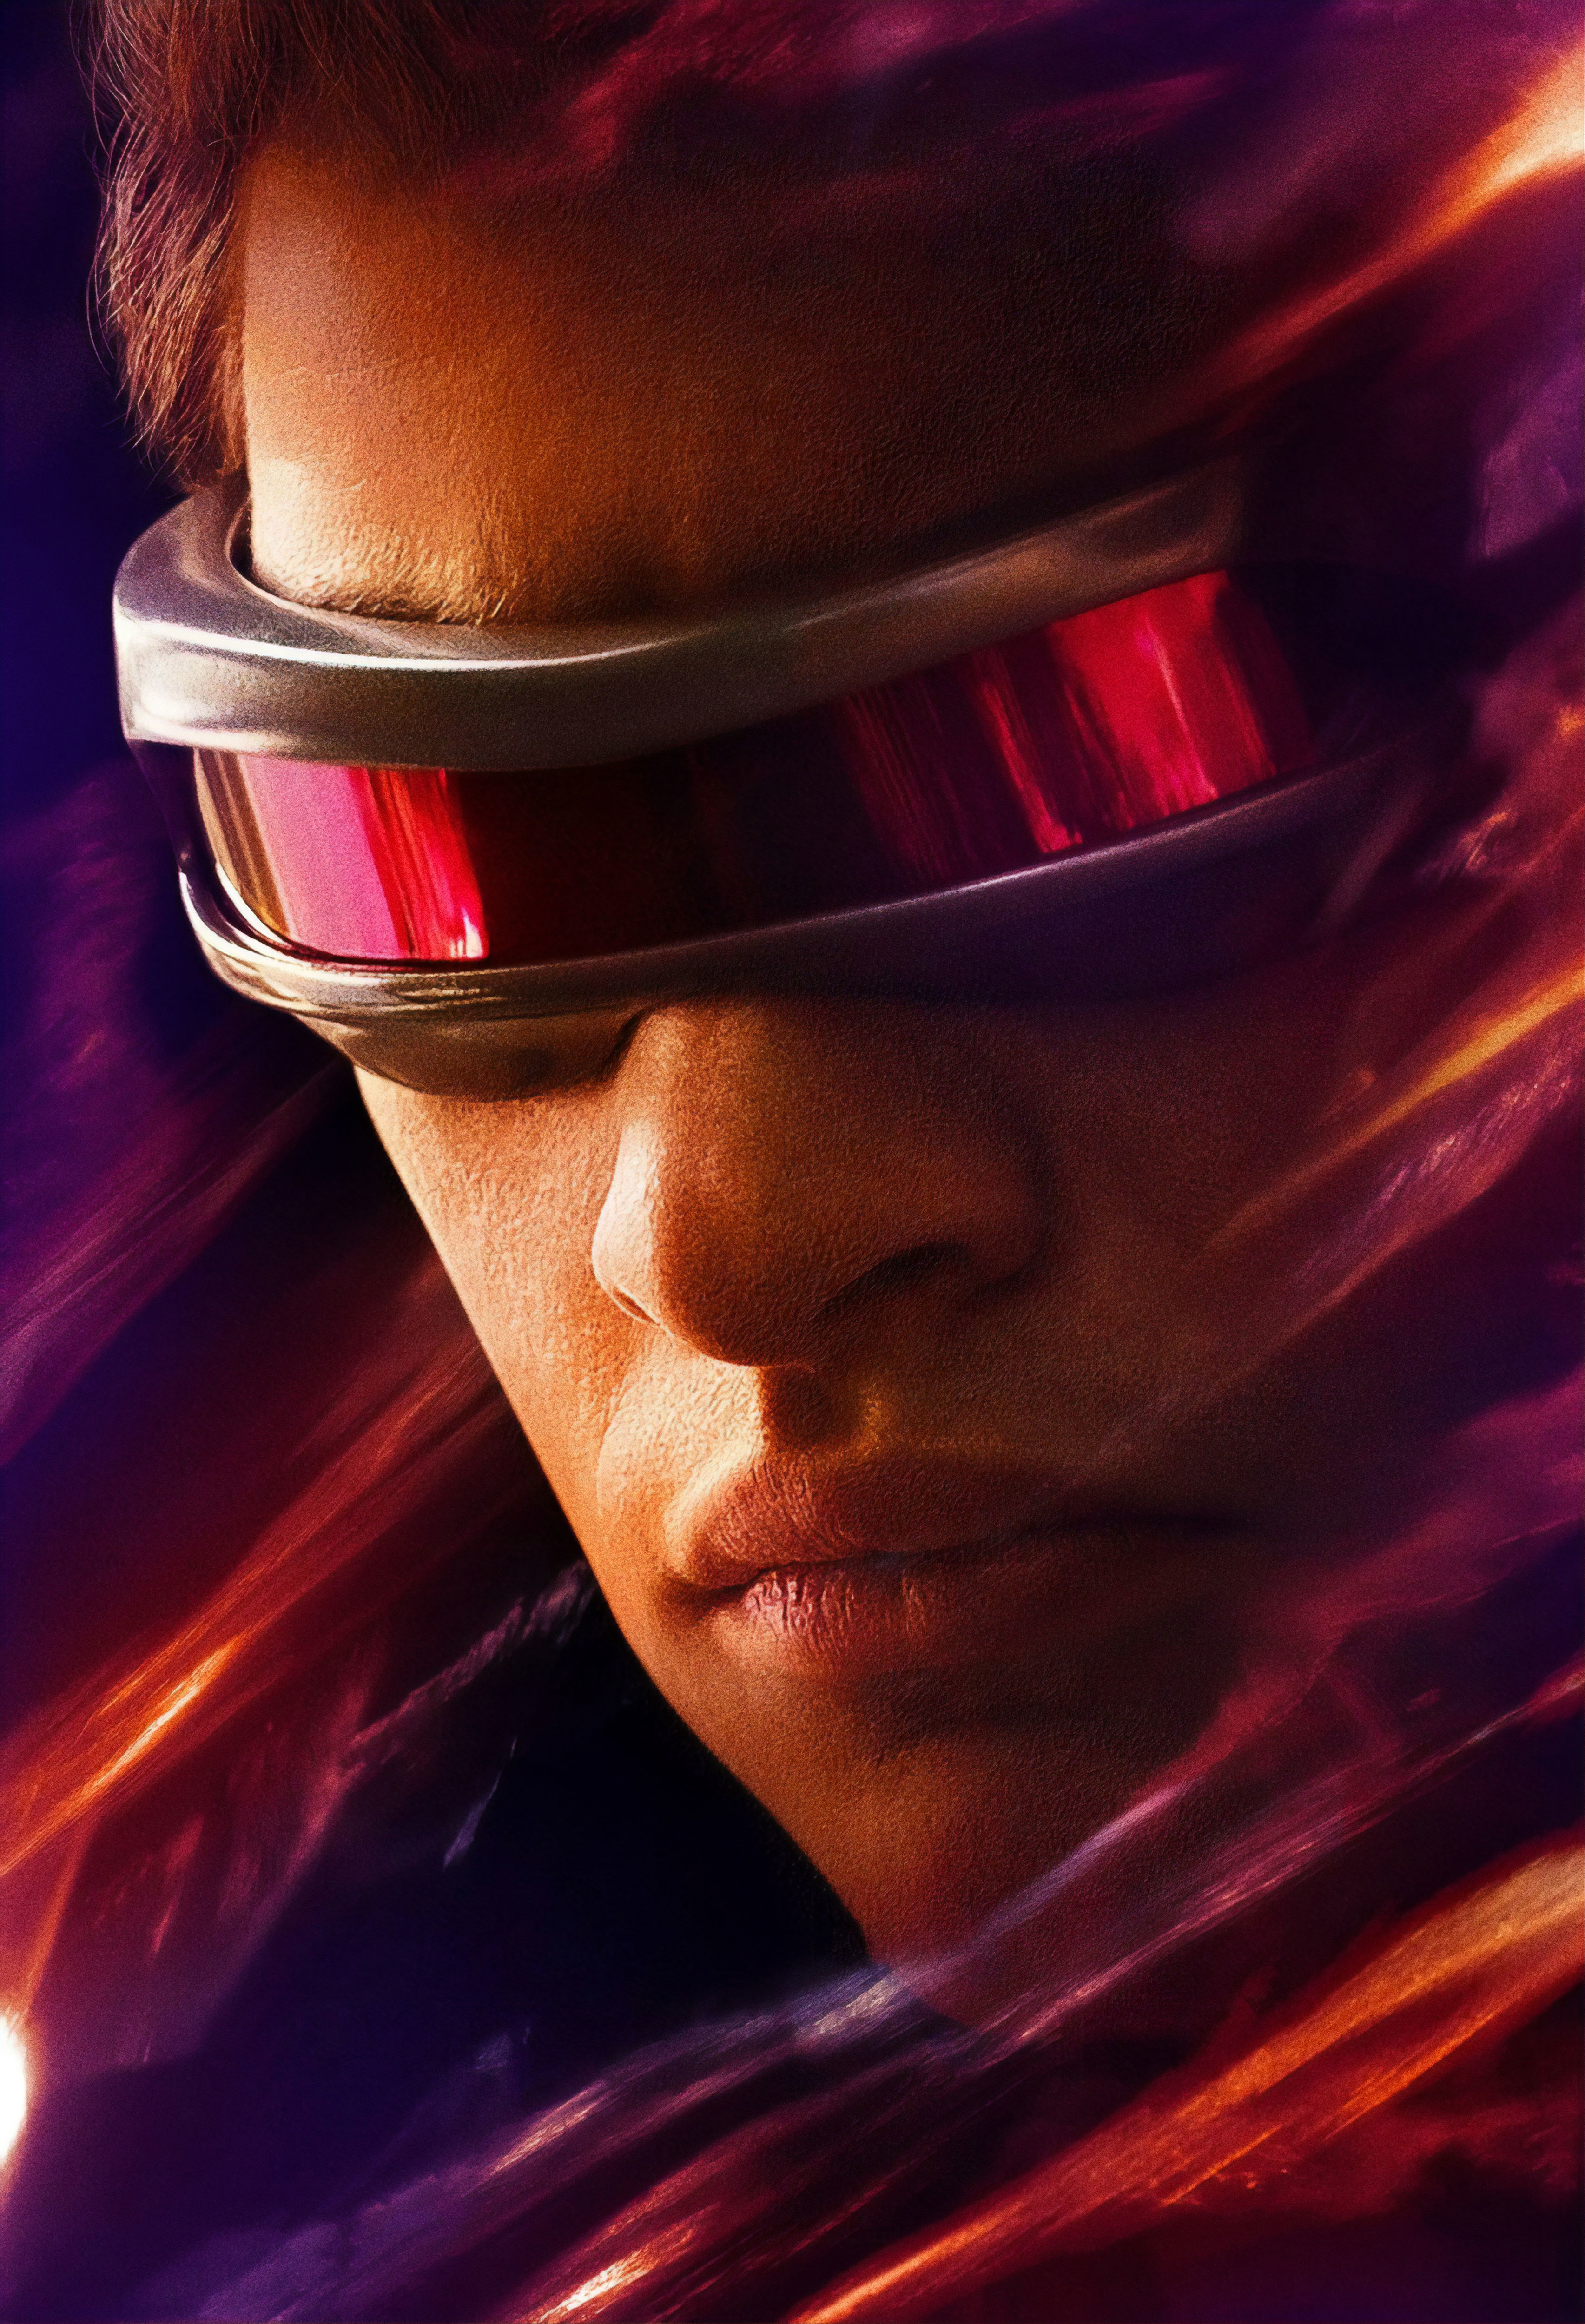 Cyclops X-Men Dark Phoenix Poster Wallpaper, HD Movies 4K Wallpapers ...